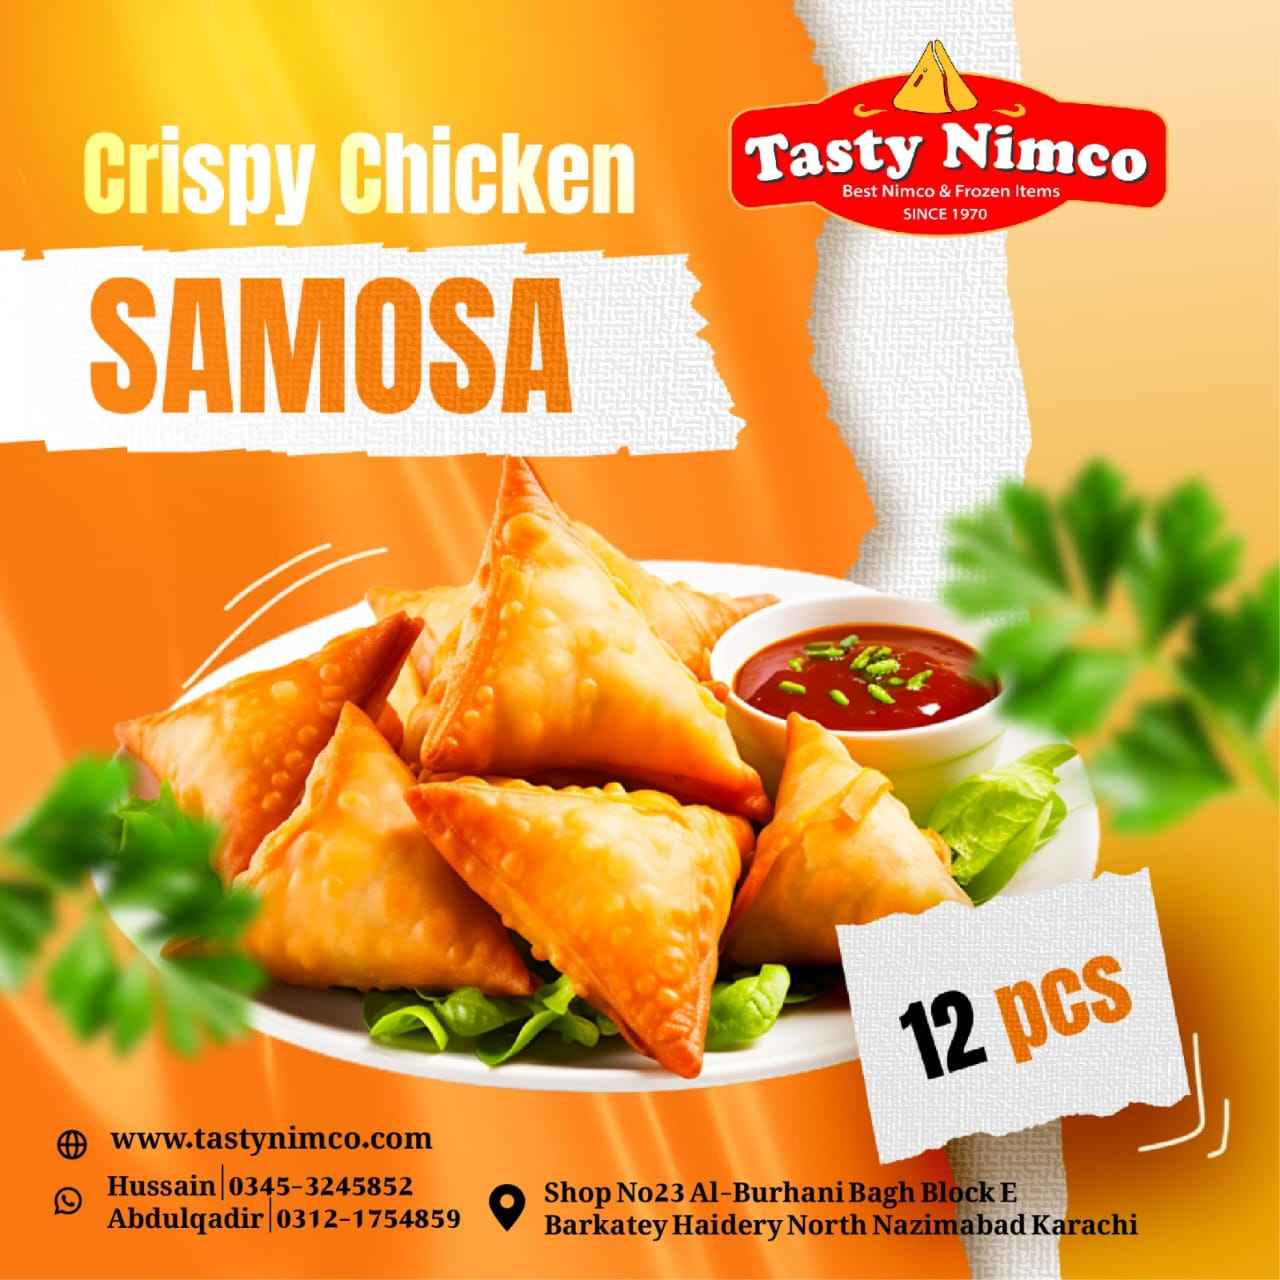 crispy chicken samosa